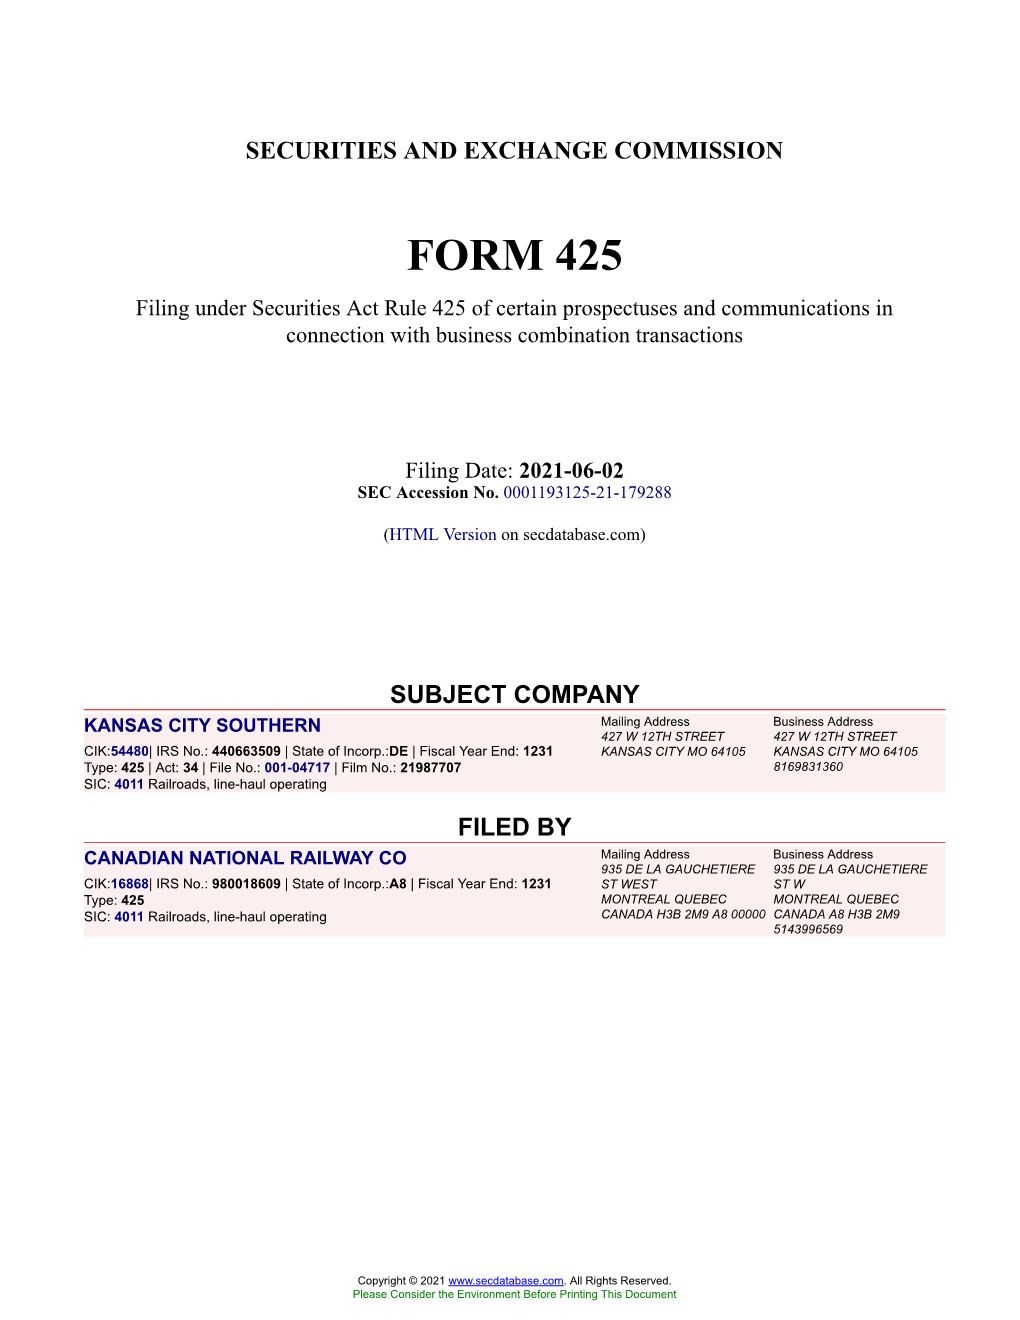 KANSAS CITY SOUTHERN Form 425 Filed 2021